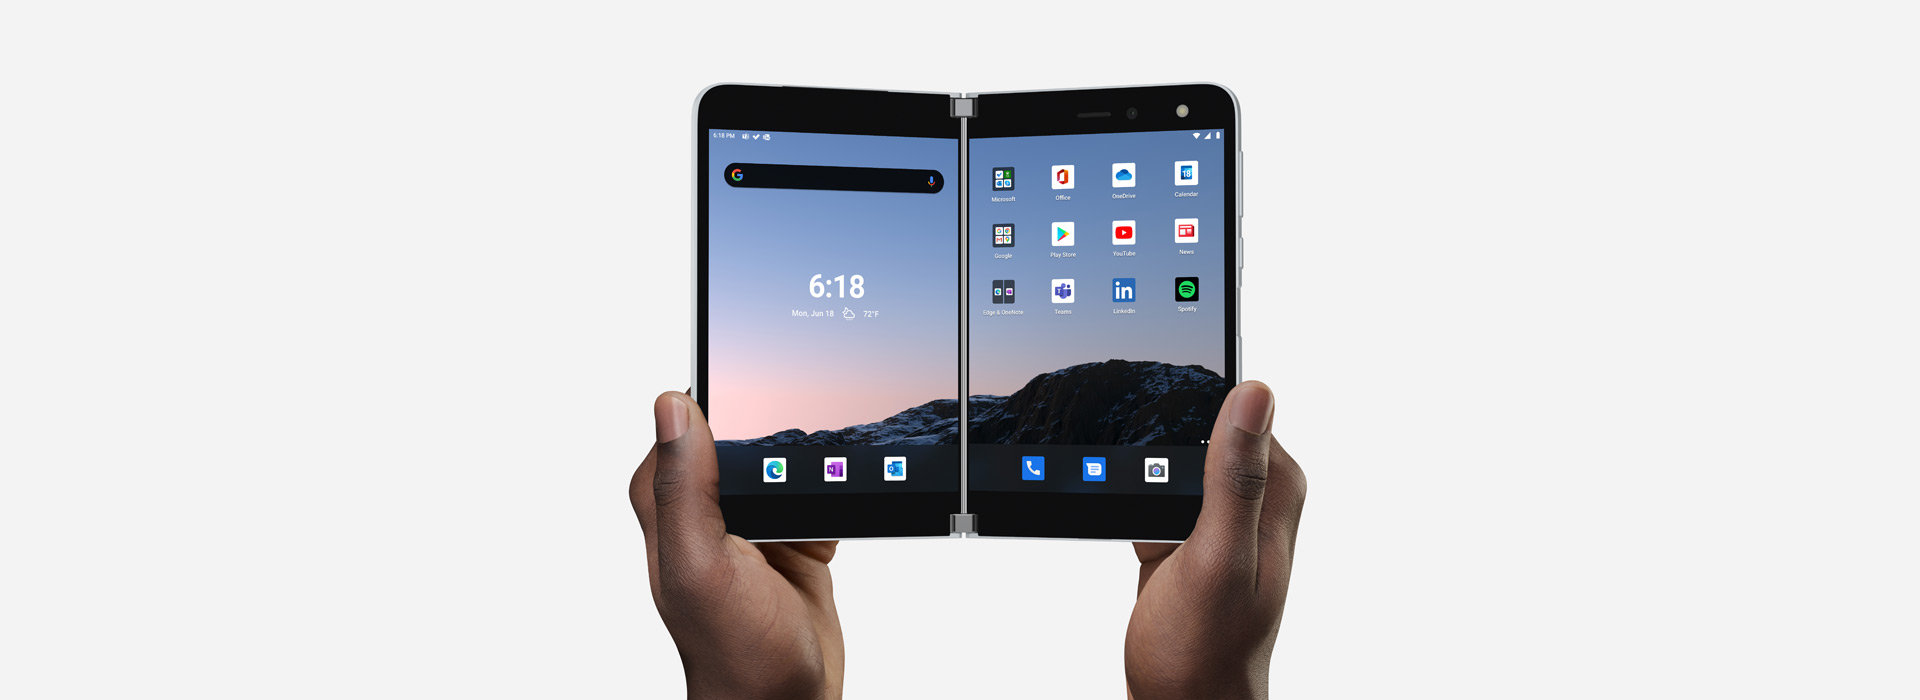 Surface Duo avattuna kaksi näyttöä näkyvissä